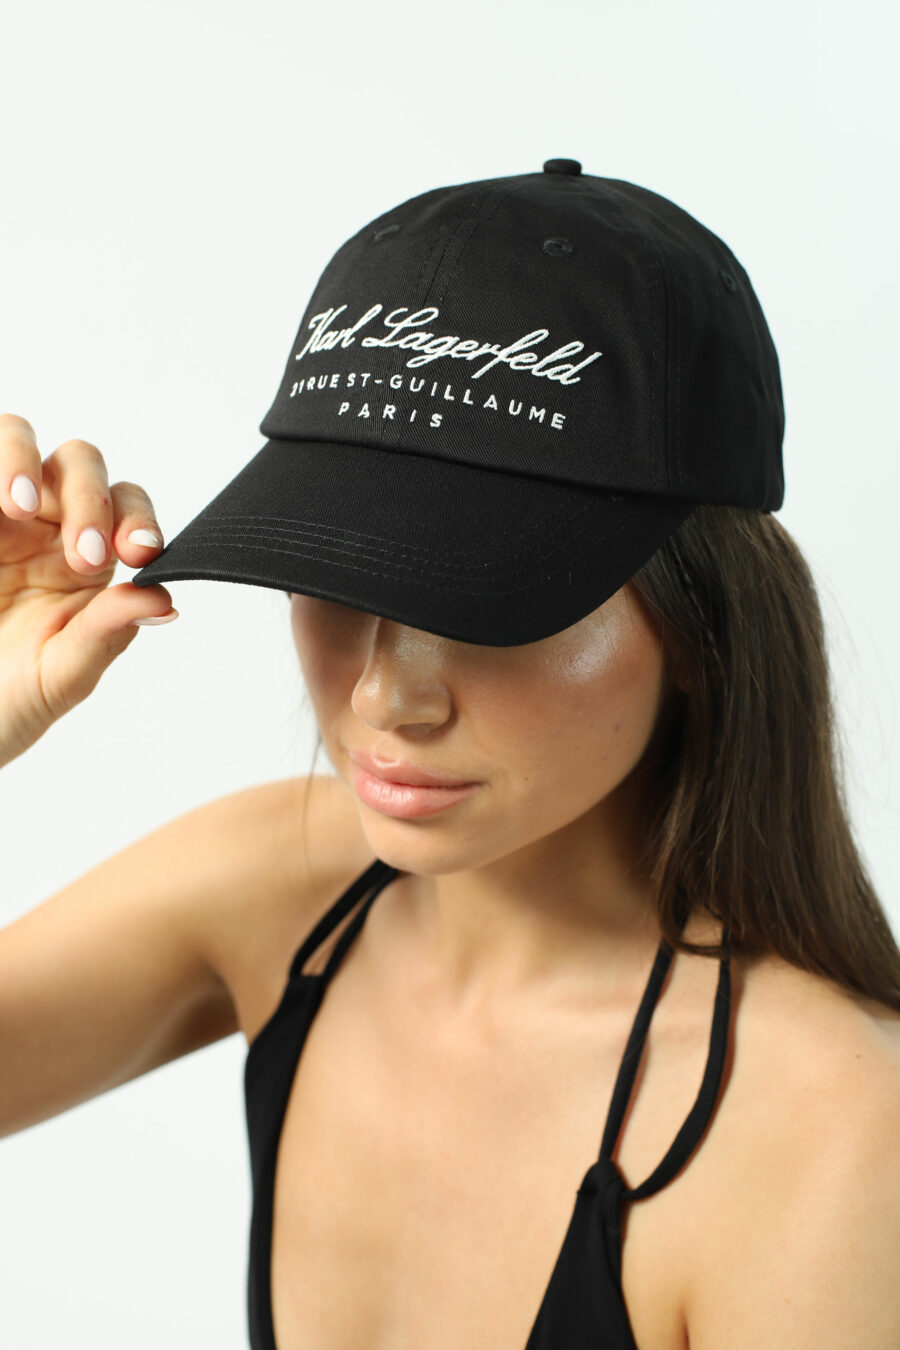 Schwarze Mütze mit kalligraphischem "Hotel"-Logo - Fotos 3017